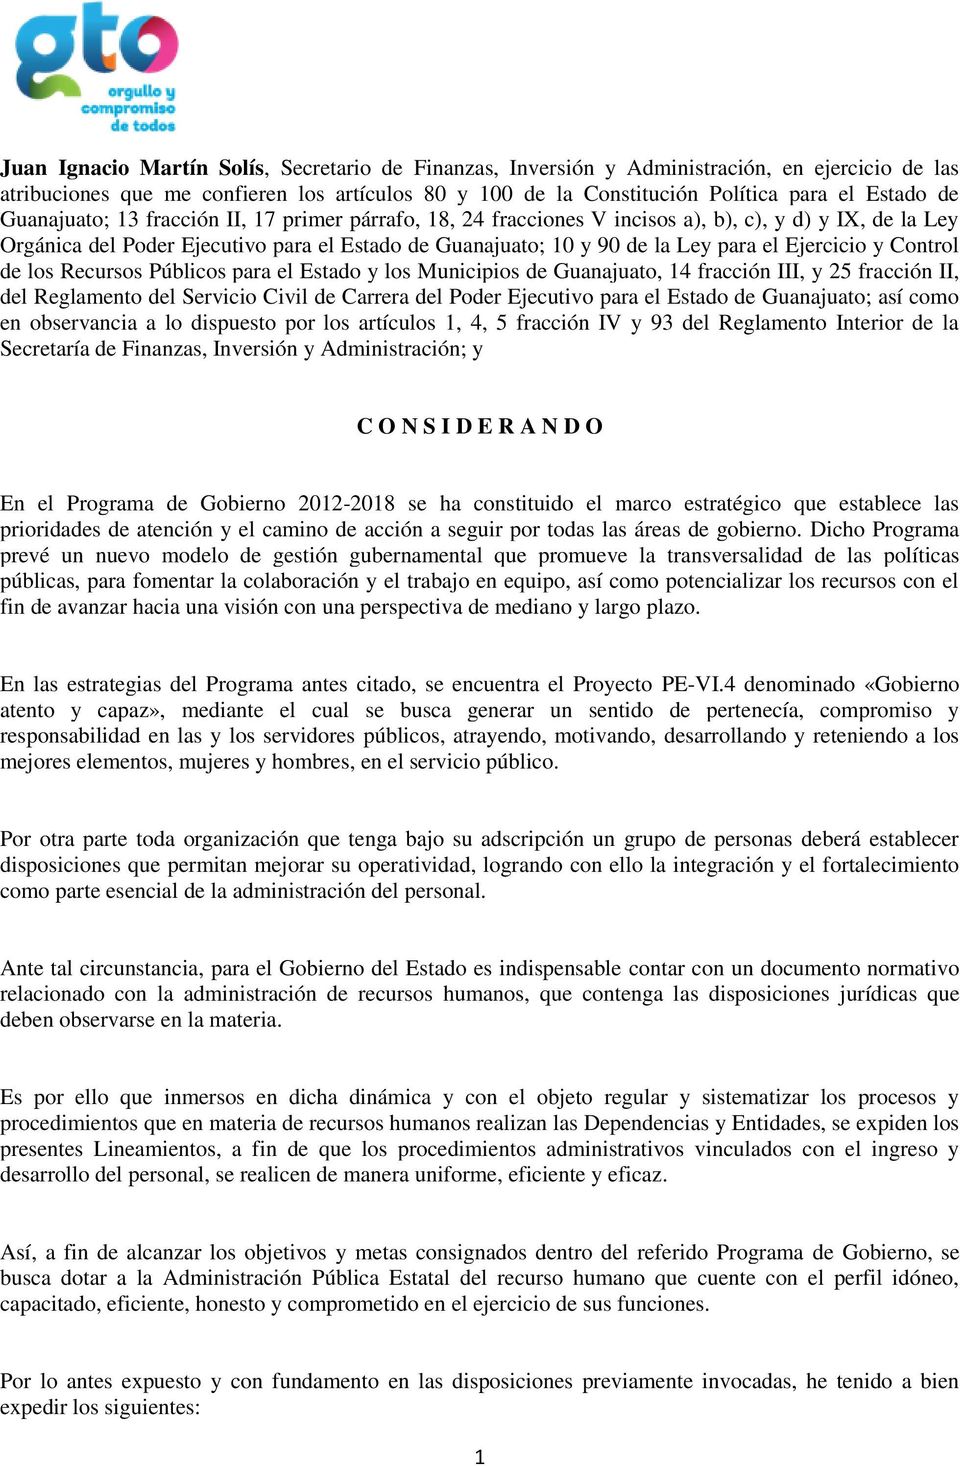 Ejercicio y Control de los Recursos Públicos para el Estado y los Municipios de Guanajuato, 14 fracción III, y 25 fracción II, del Reglamento del Servicio Civil de Carrera del Poder Ejecutivo para el